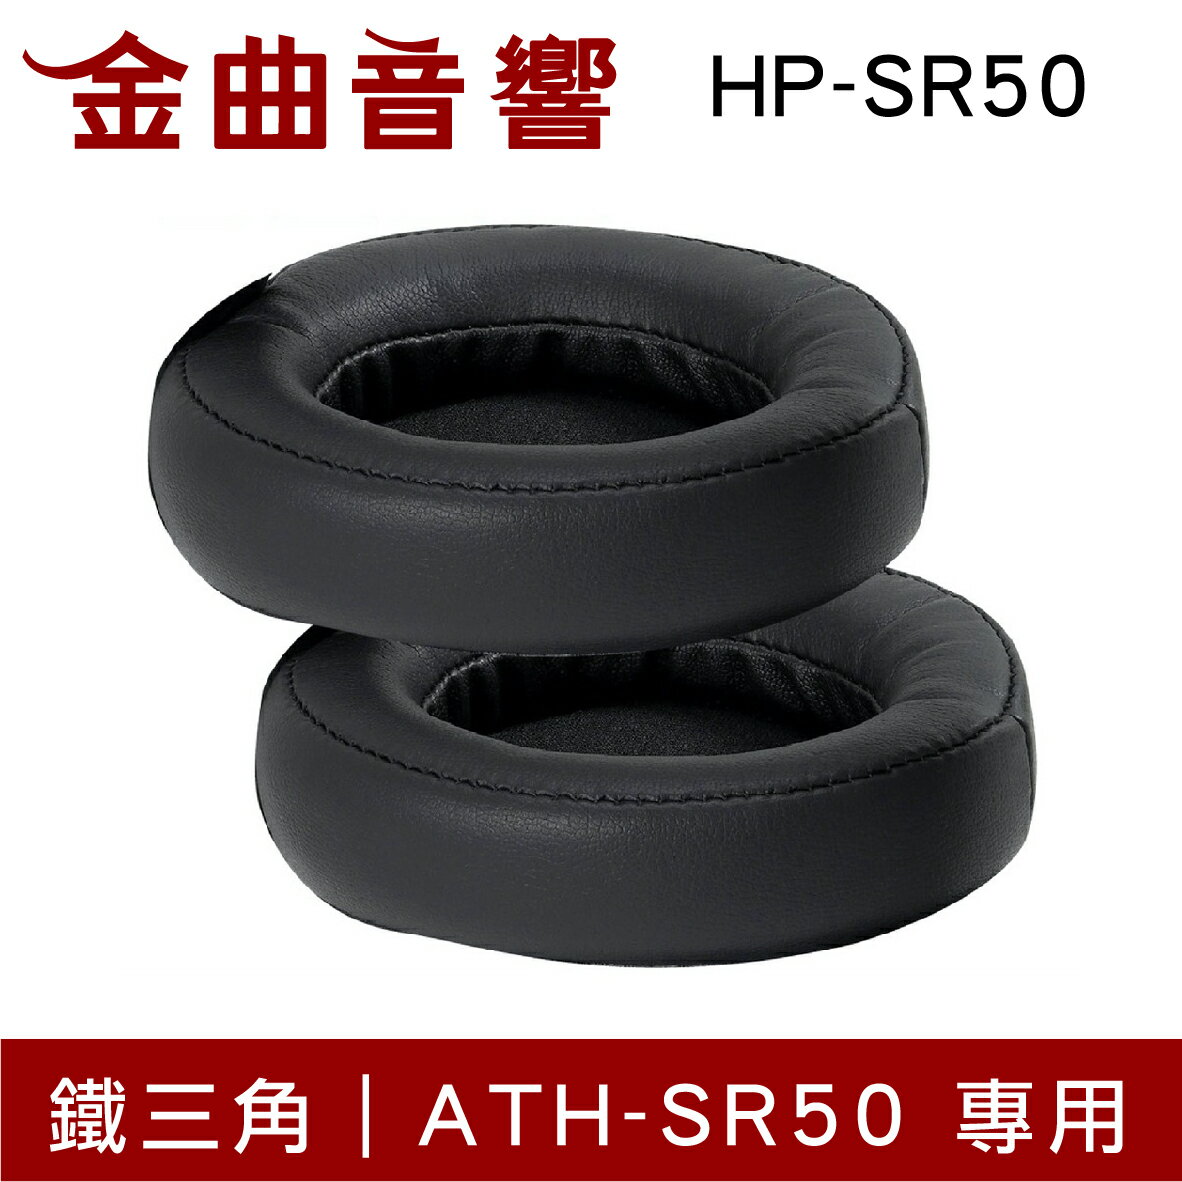 鐵三角 HP-SR50 替換耳罩 一對 ATH-SR50 專用 | 金曲音響